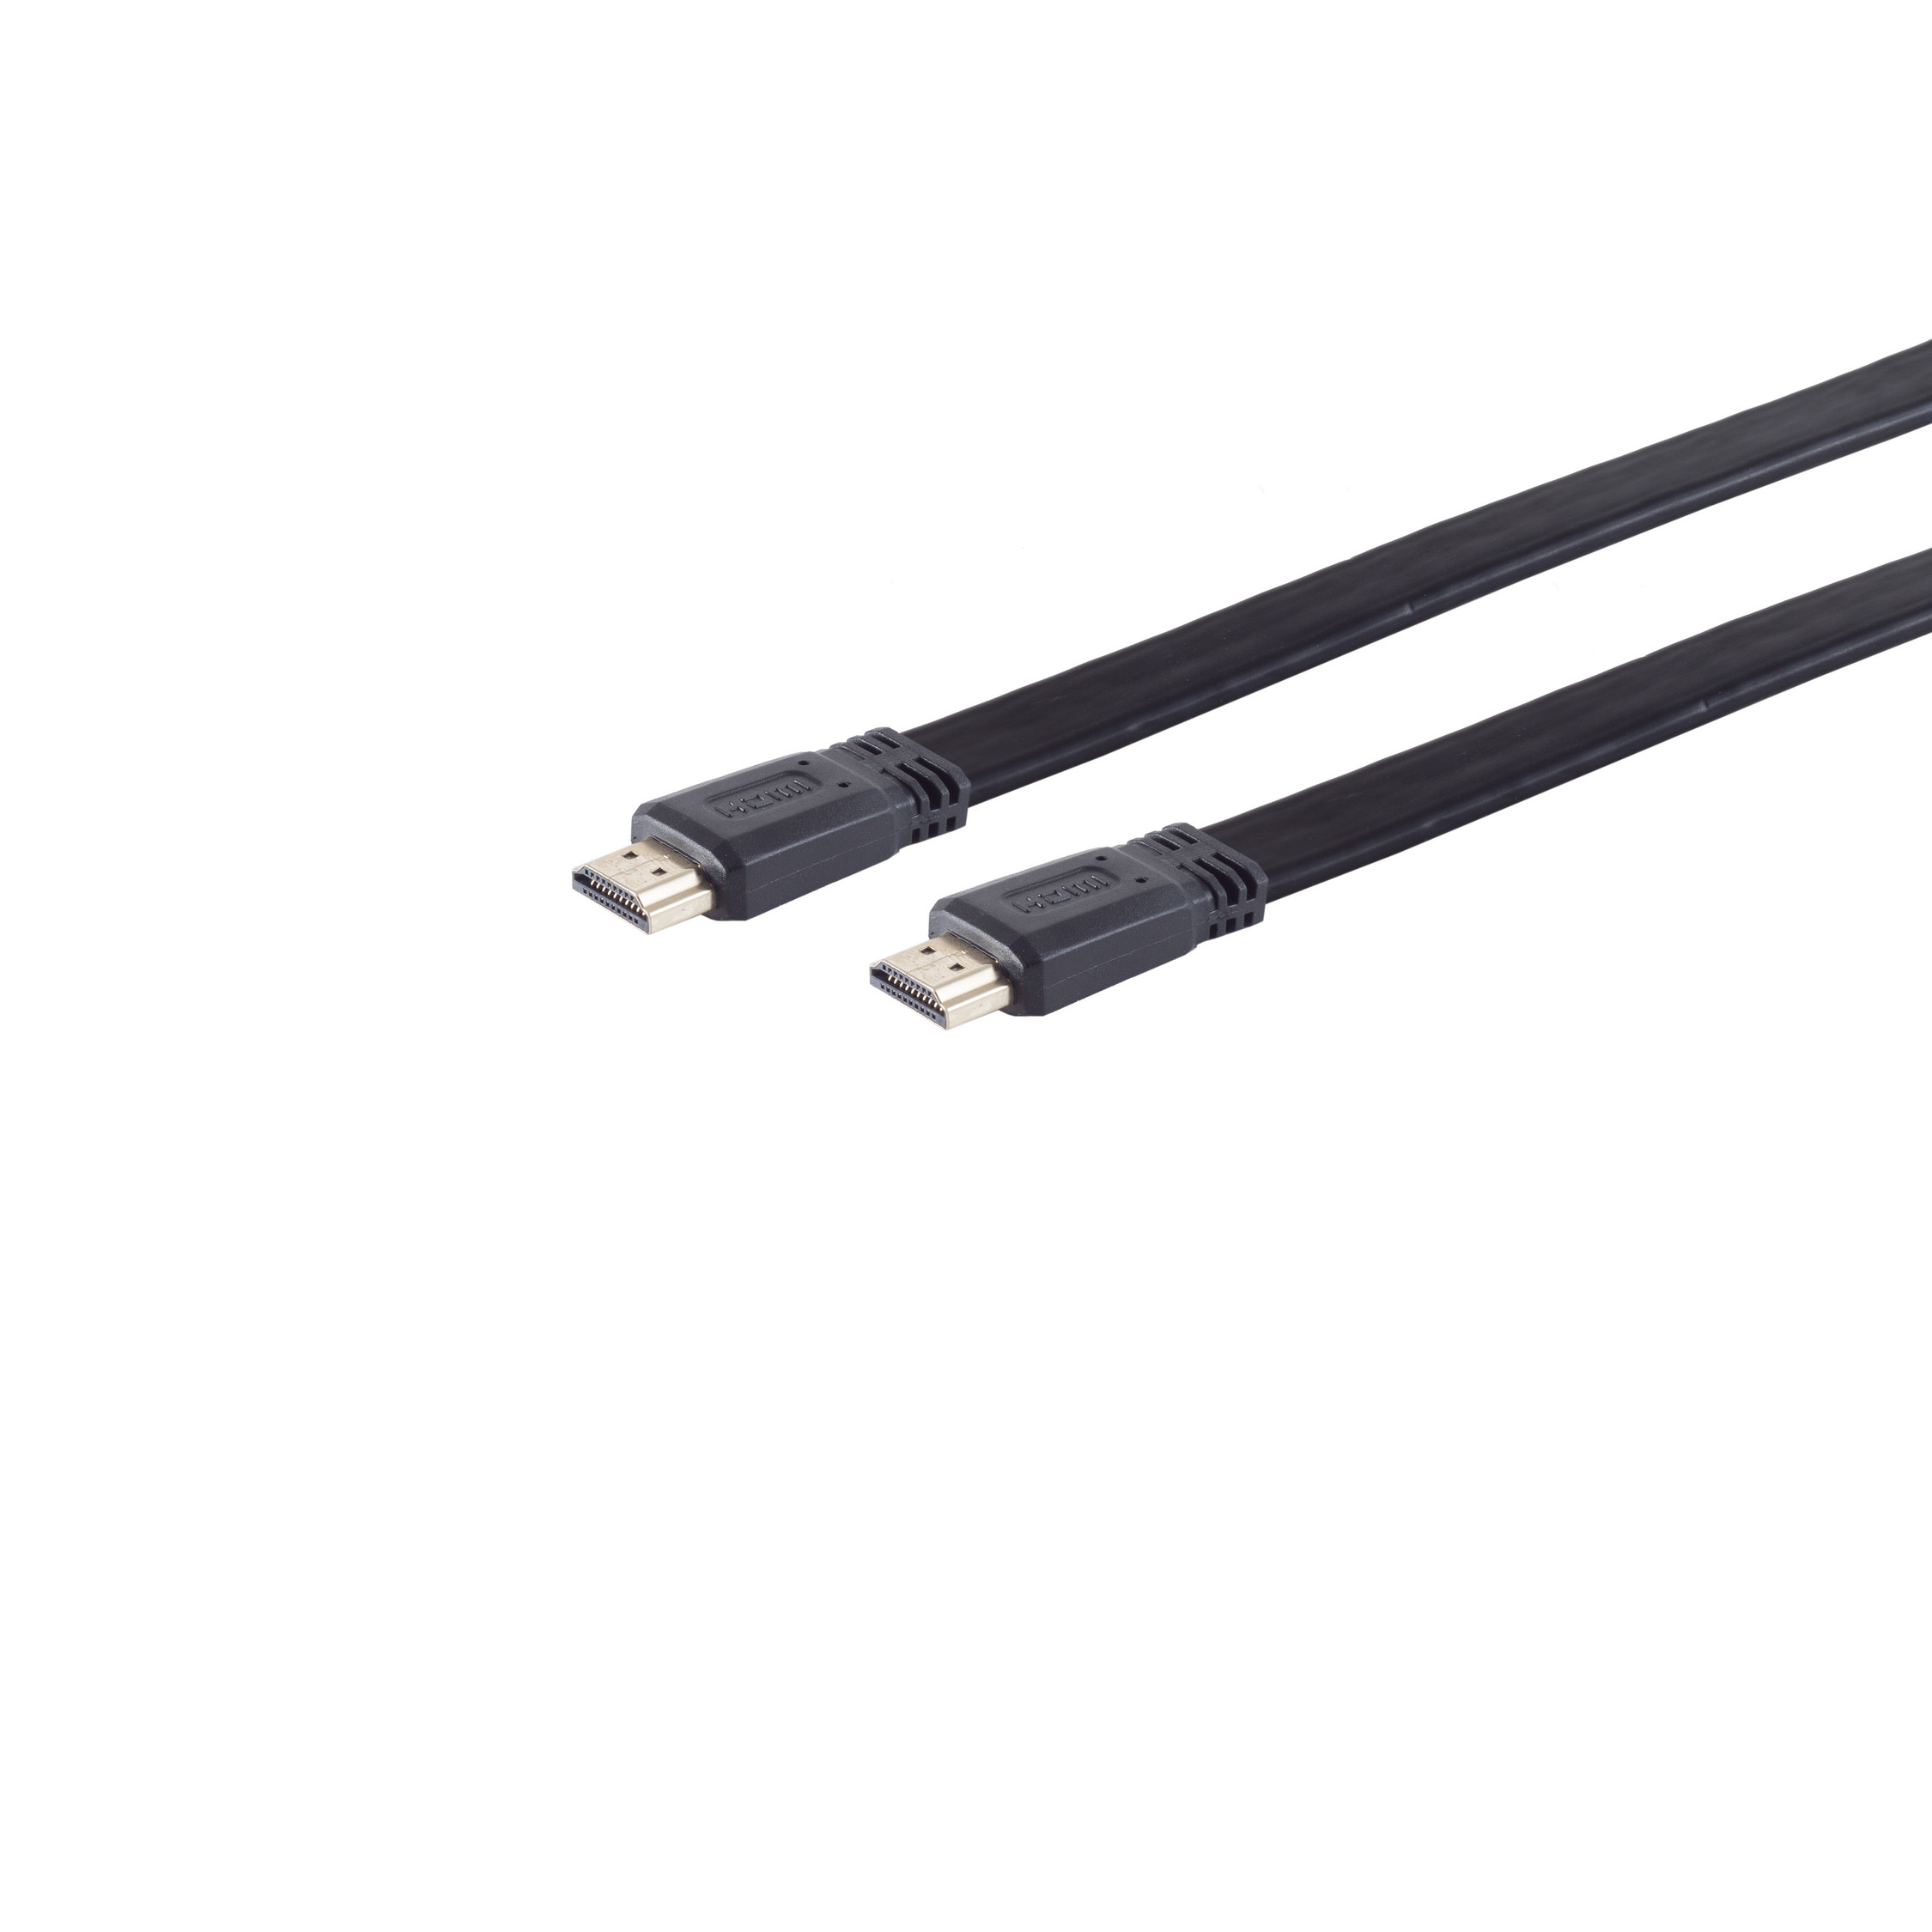 S/CONN MAXIMUM A-St. FLACH verg. HDMI CONNECTIVITY HDMI 5m / A-St HEAC HDMI Kabel